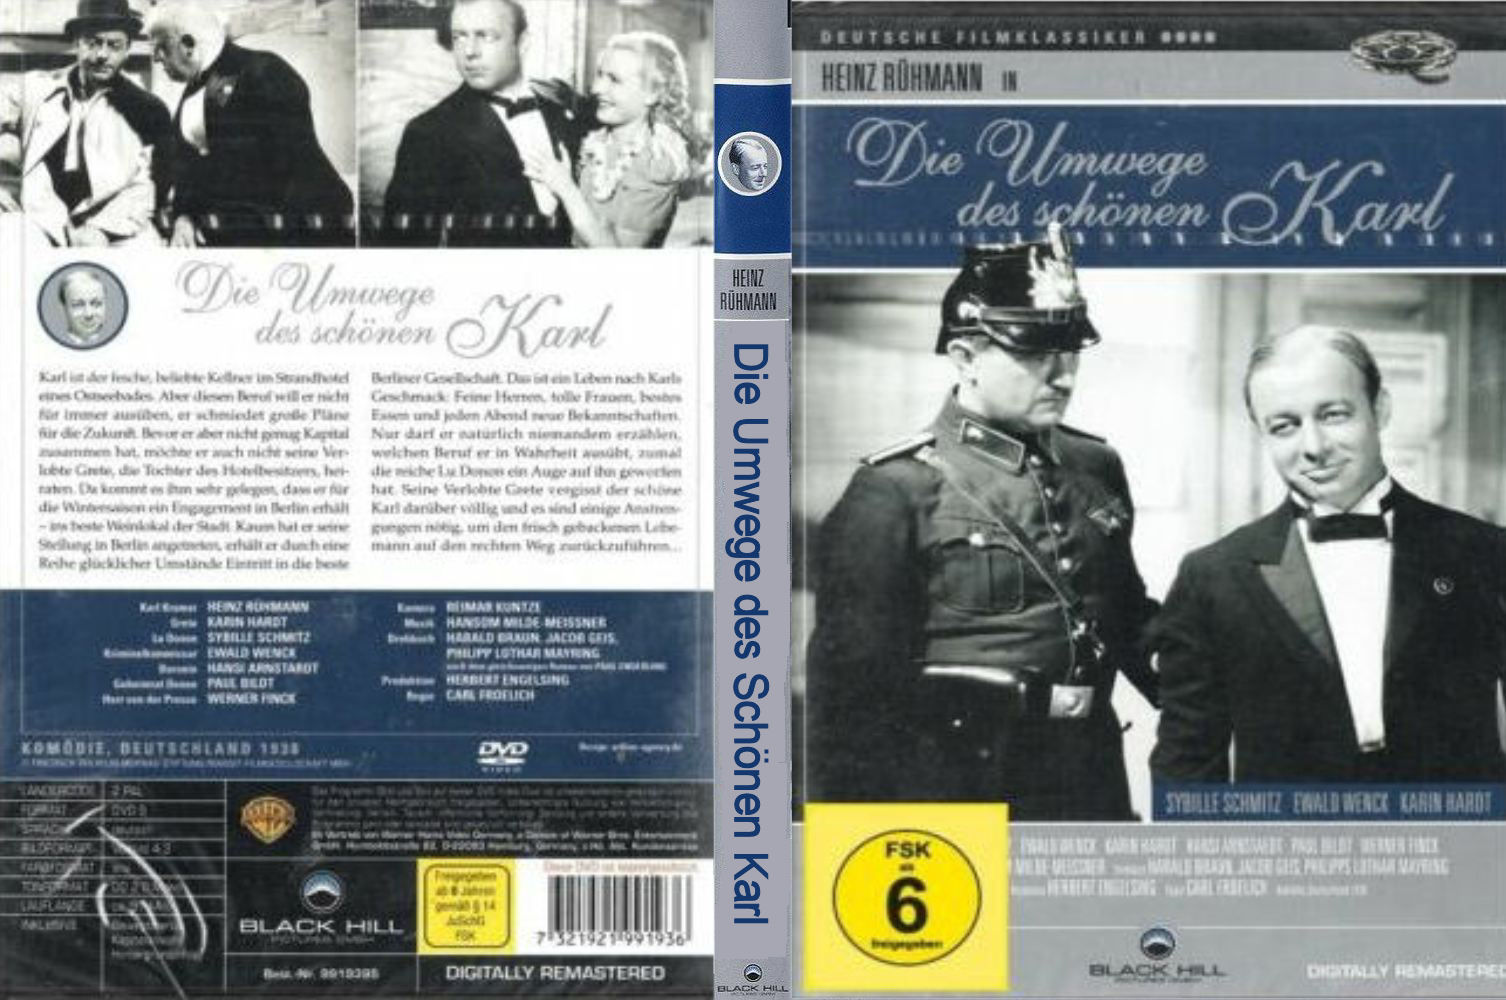 Die Umwege des Schönen Karl (1938)